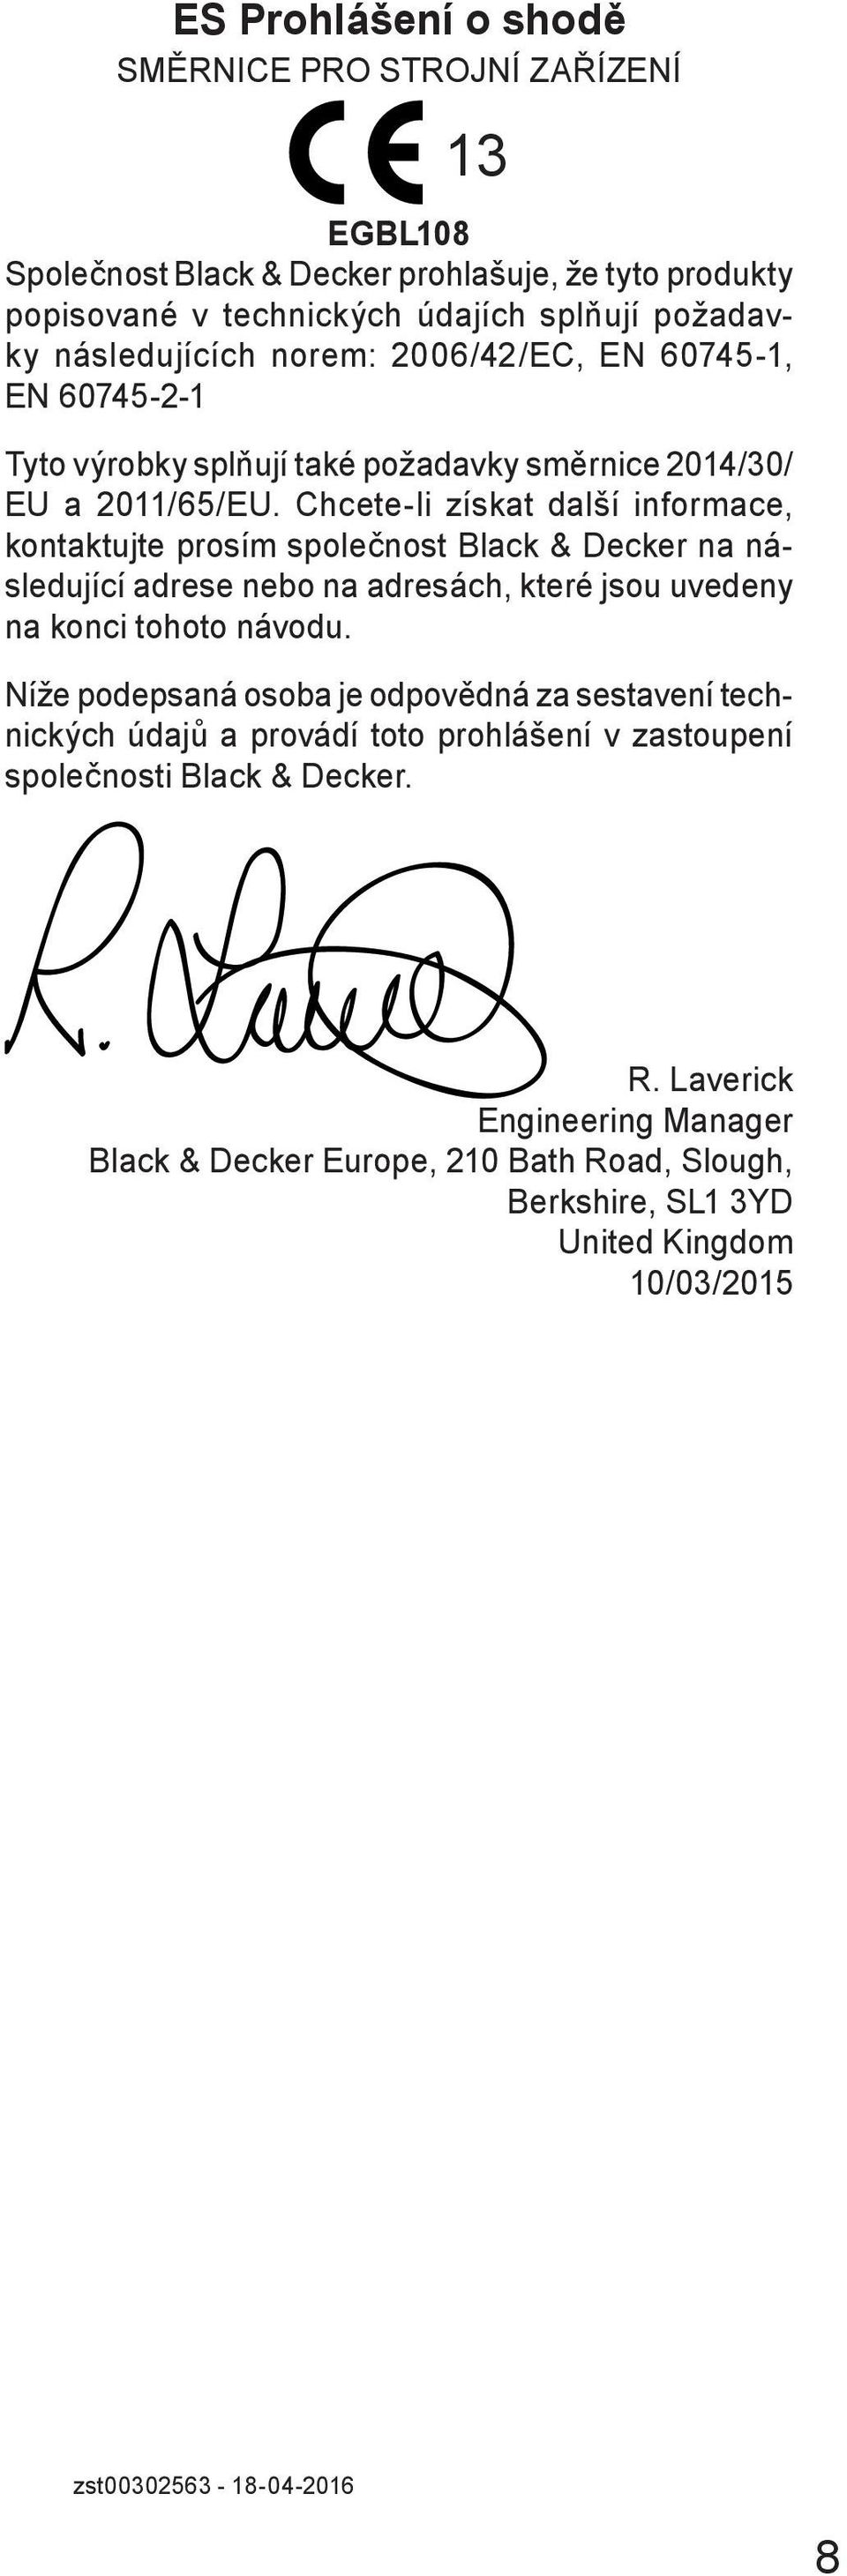 Chcete-li získat další informace, kontaktujte prosím společnost Black & Decker na následující adrese nebo na adresách, které jsou uvedeny na konci tohoto návodu.